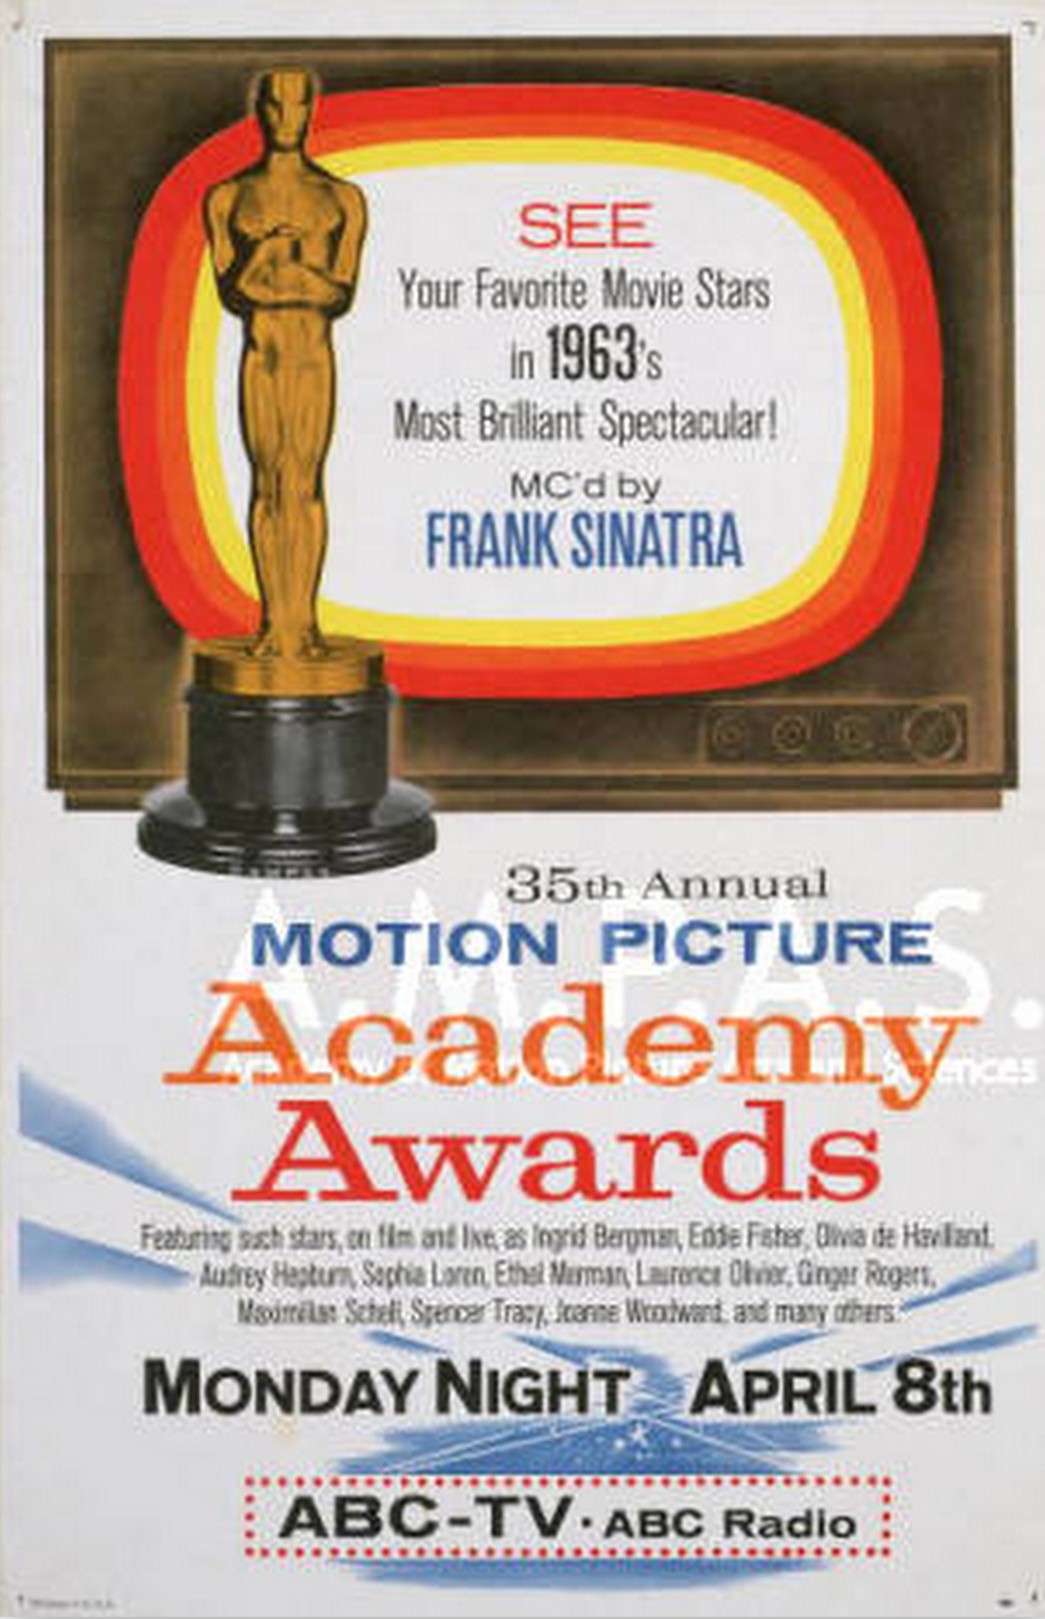 The 35th Annual Academy Awards